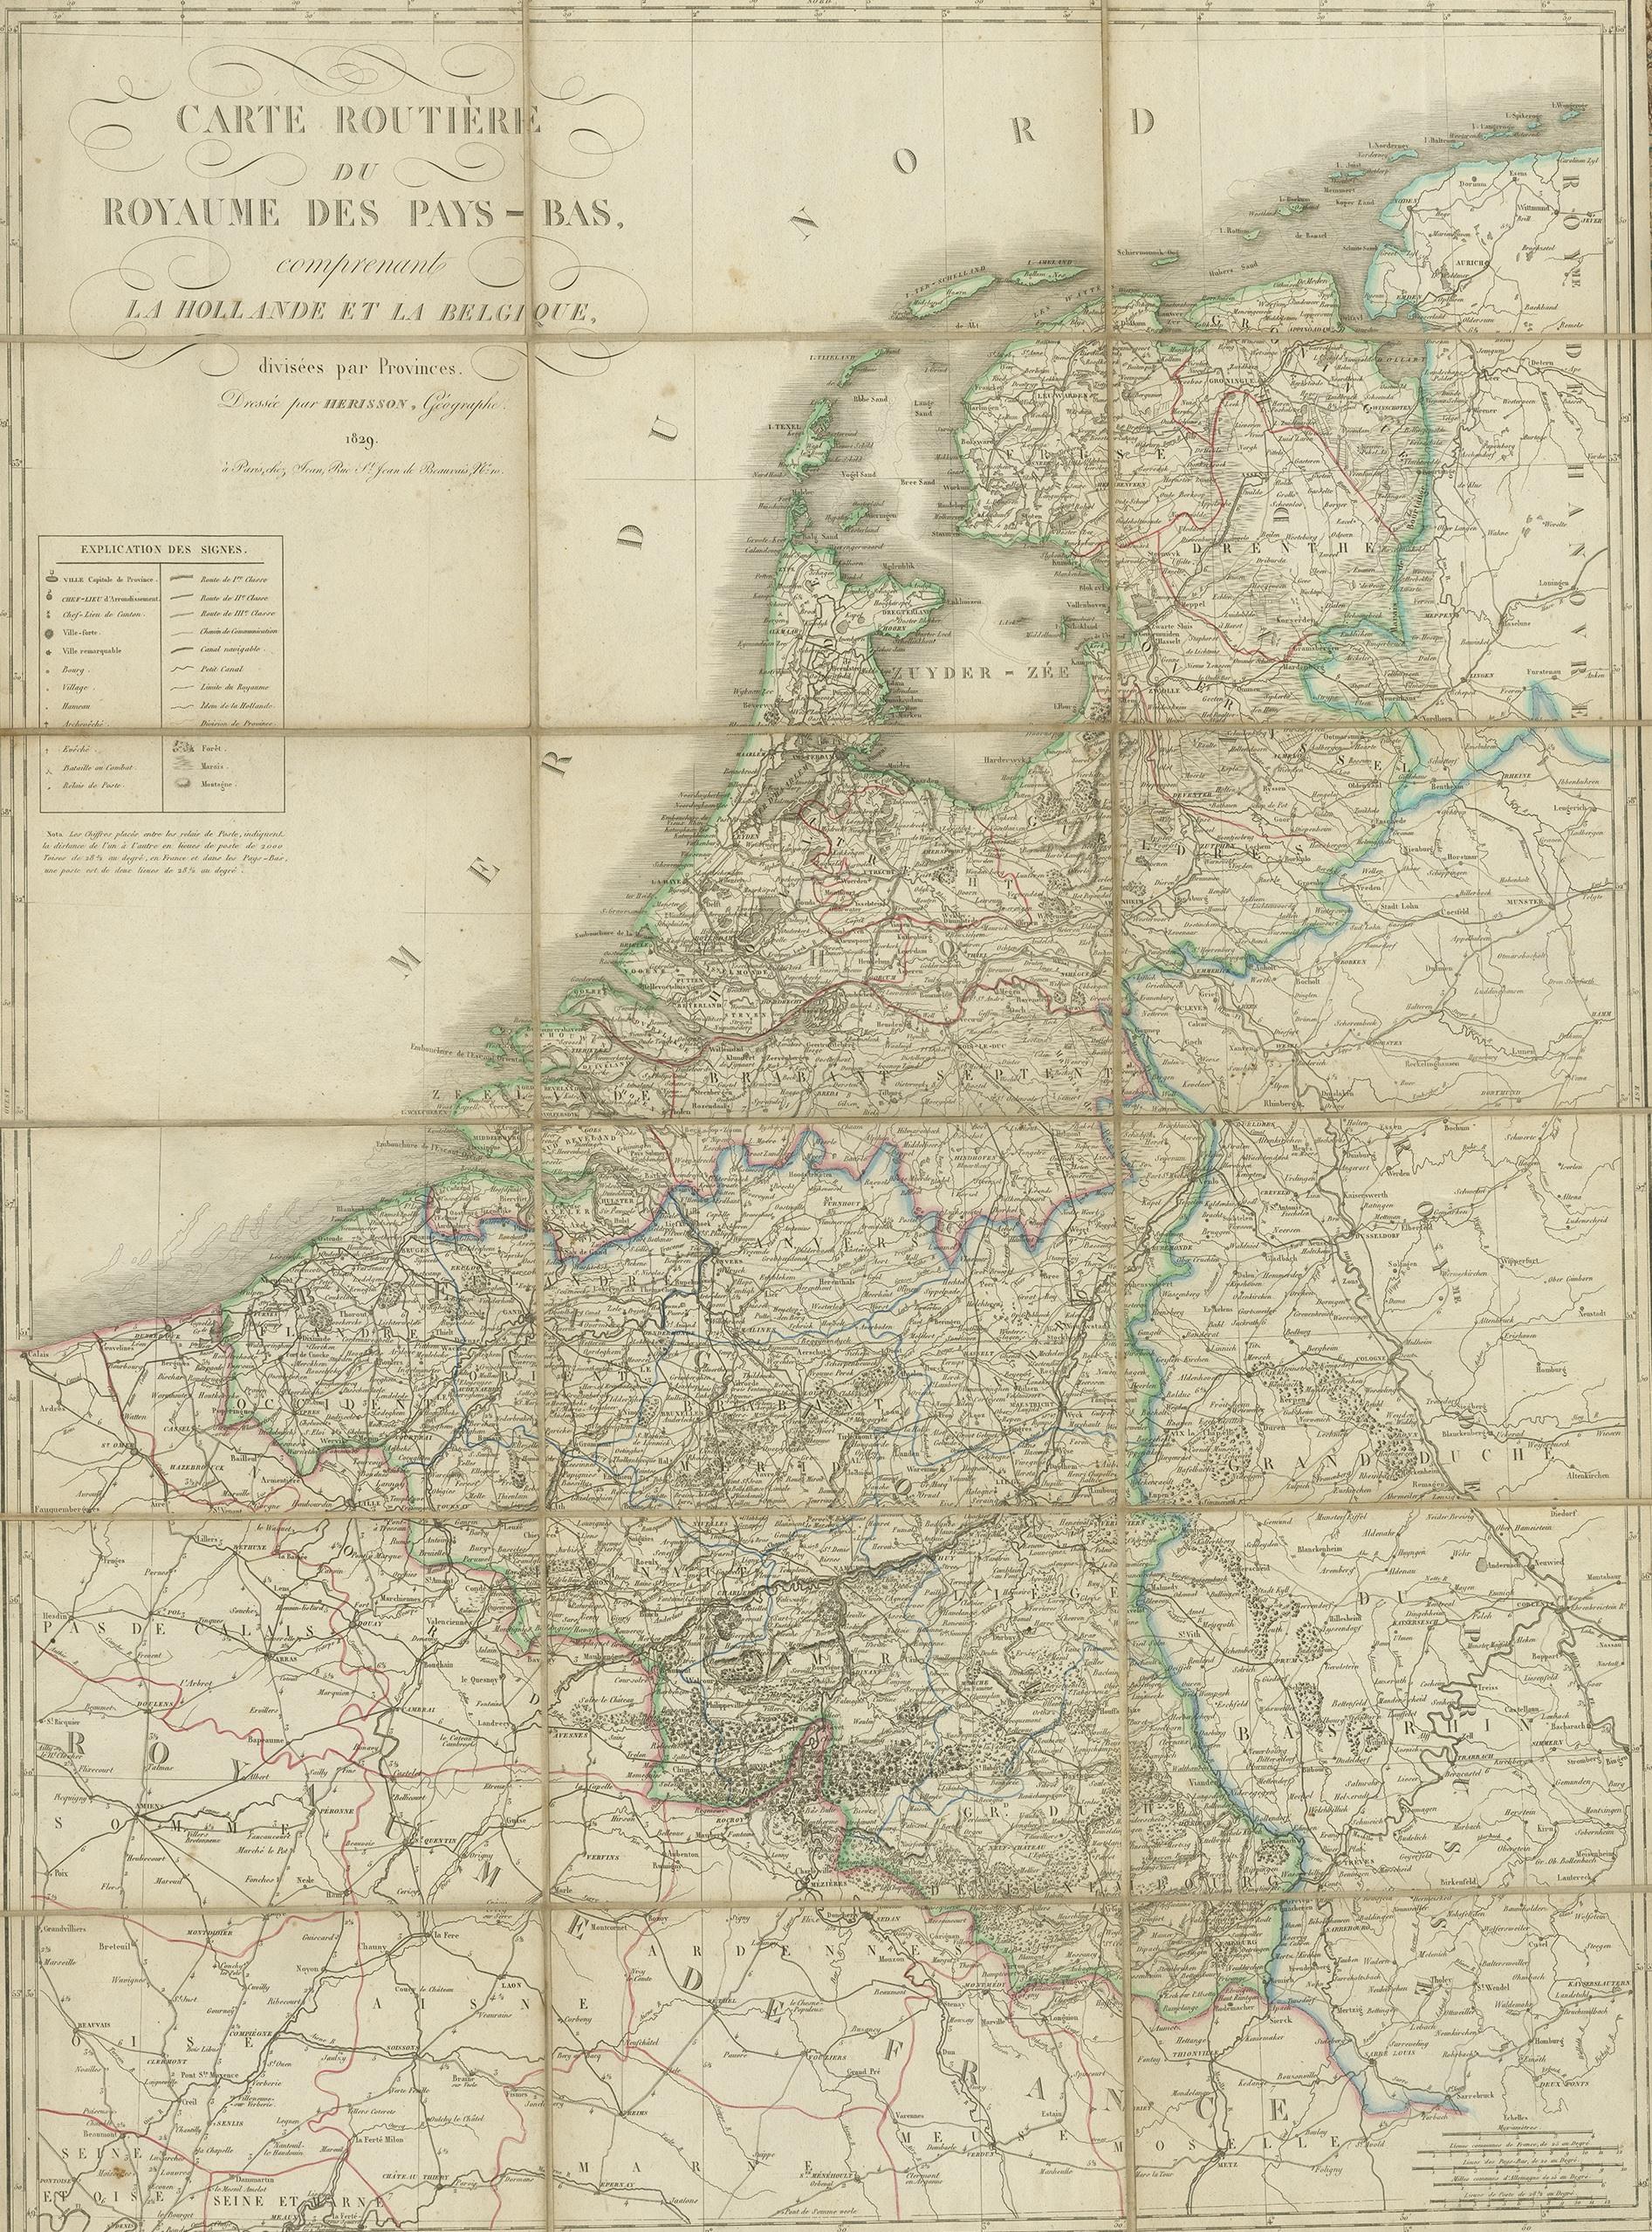 For your online catalogue, here is a detailed description of the antique map titled 'Carte Routière du Royaume des Pays-Bas comprenant la Hollande et la Belgique,' published by Eustache Hérisson in 1829:

**Title**: 'Carte Routière du Royaume des